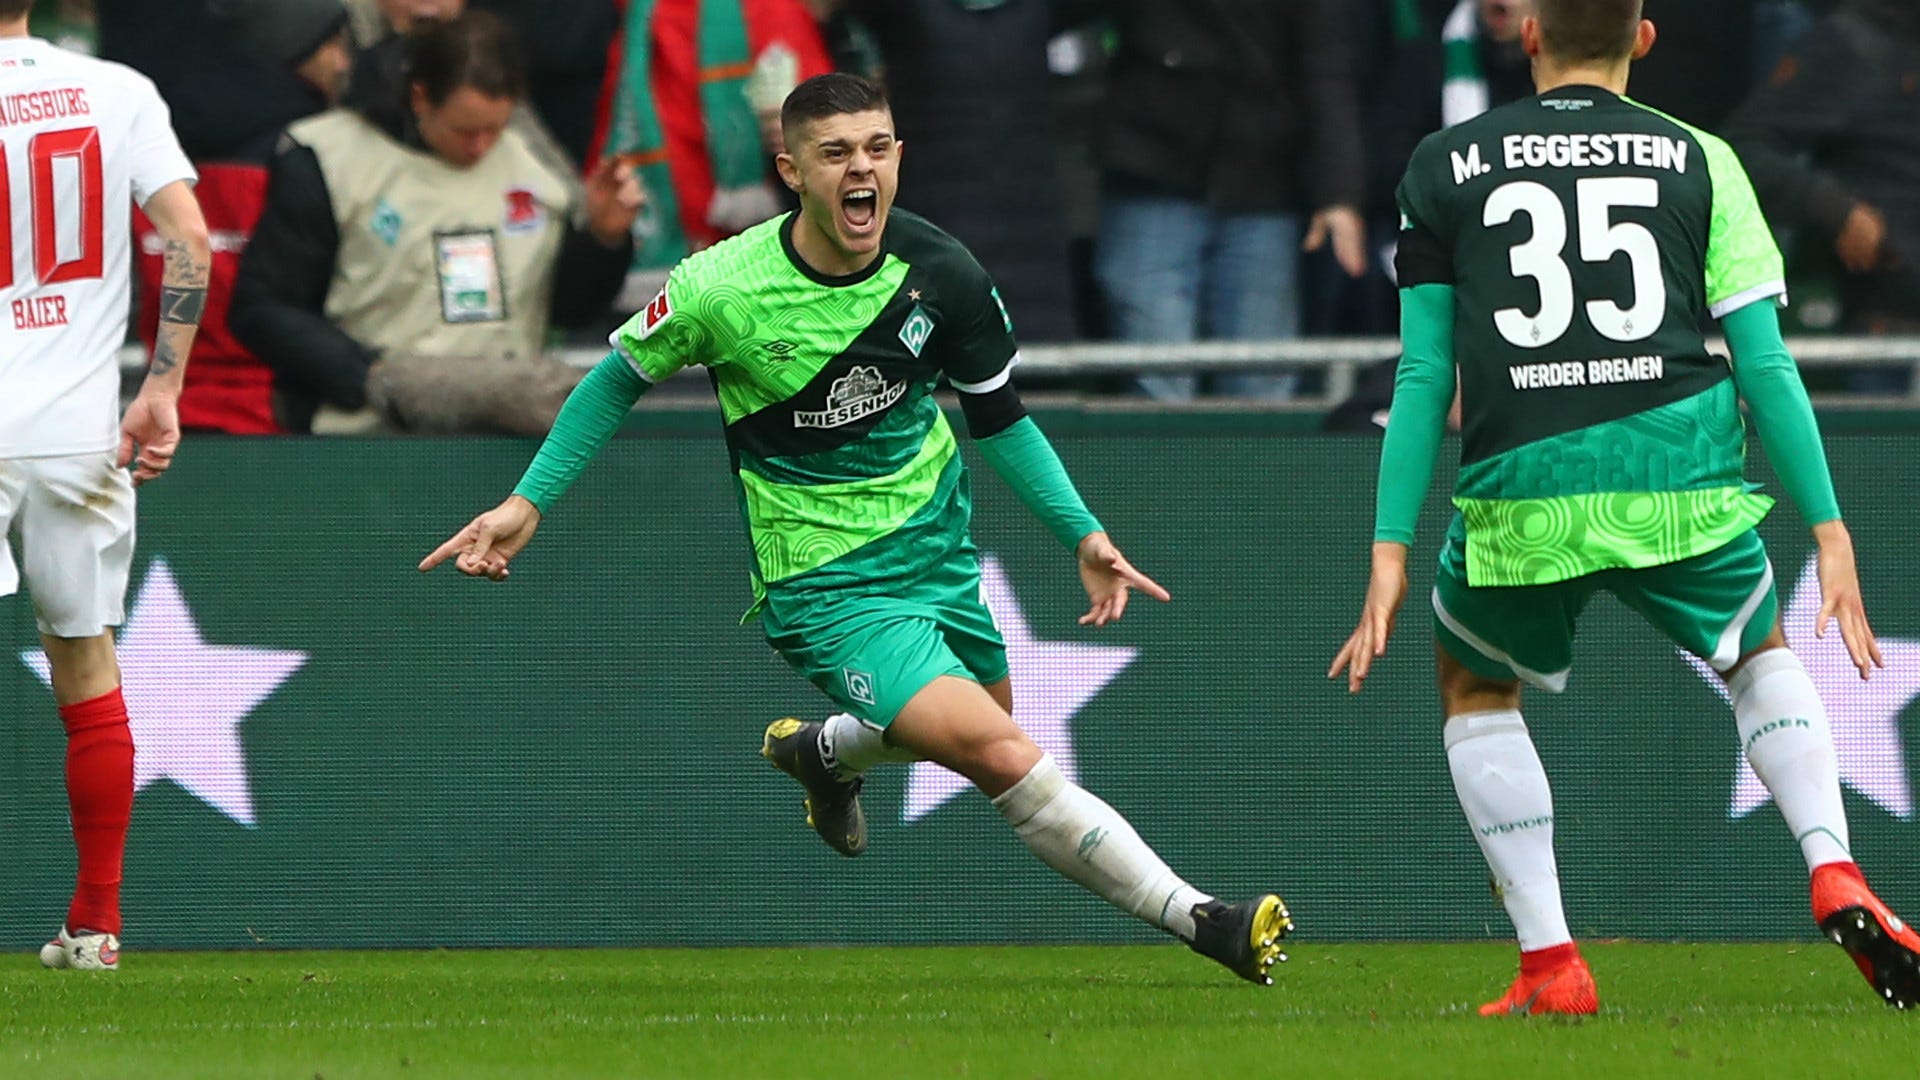 VIDEO-Highlights, Bundesliga: Werder FC Augsburg 4:0 | Goal.com Deutschland